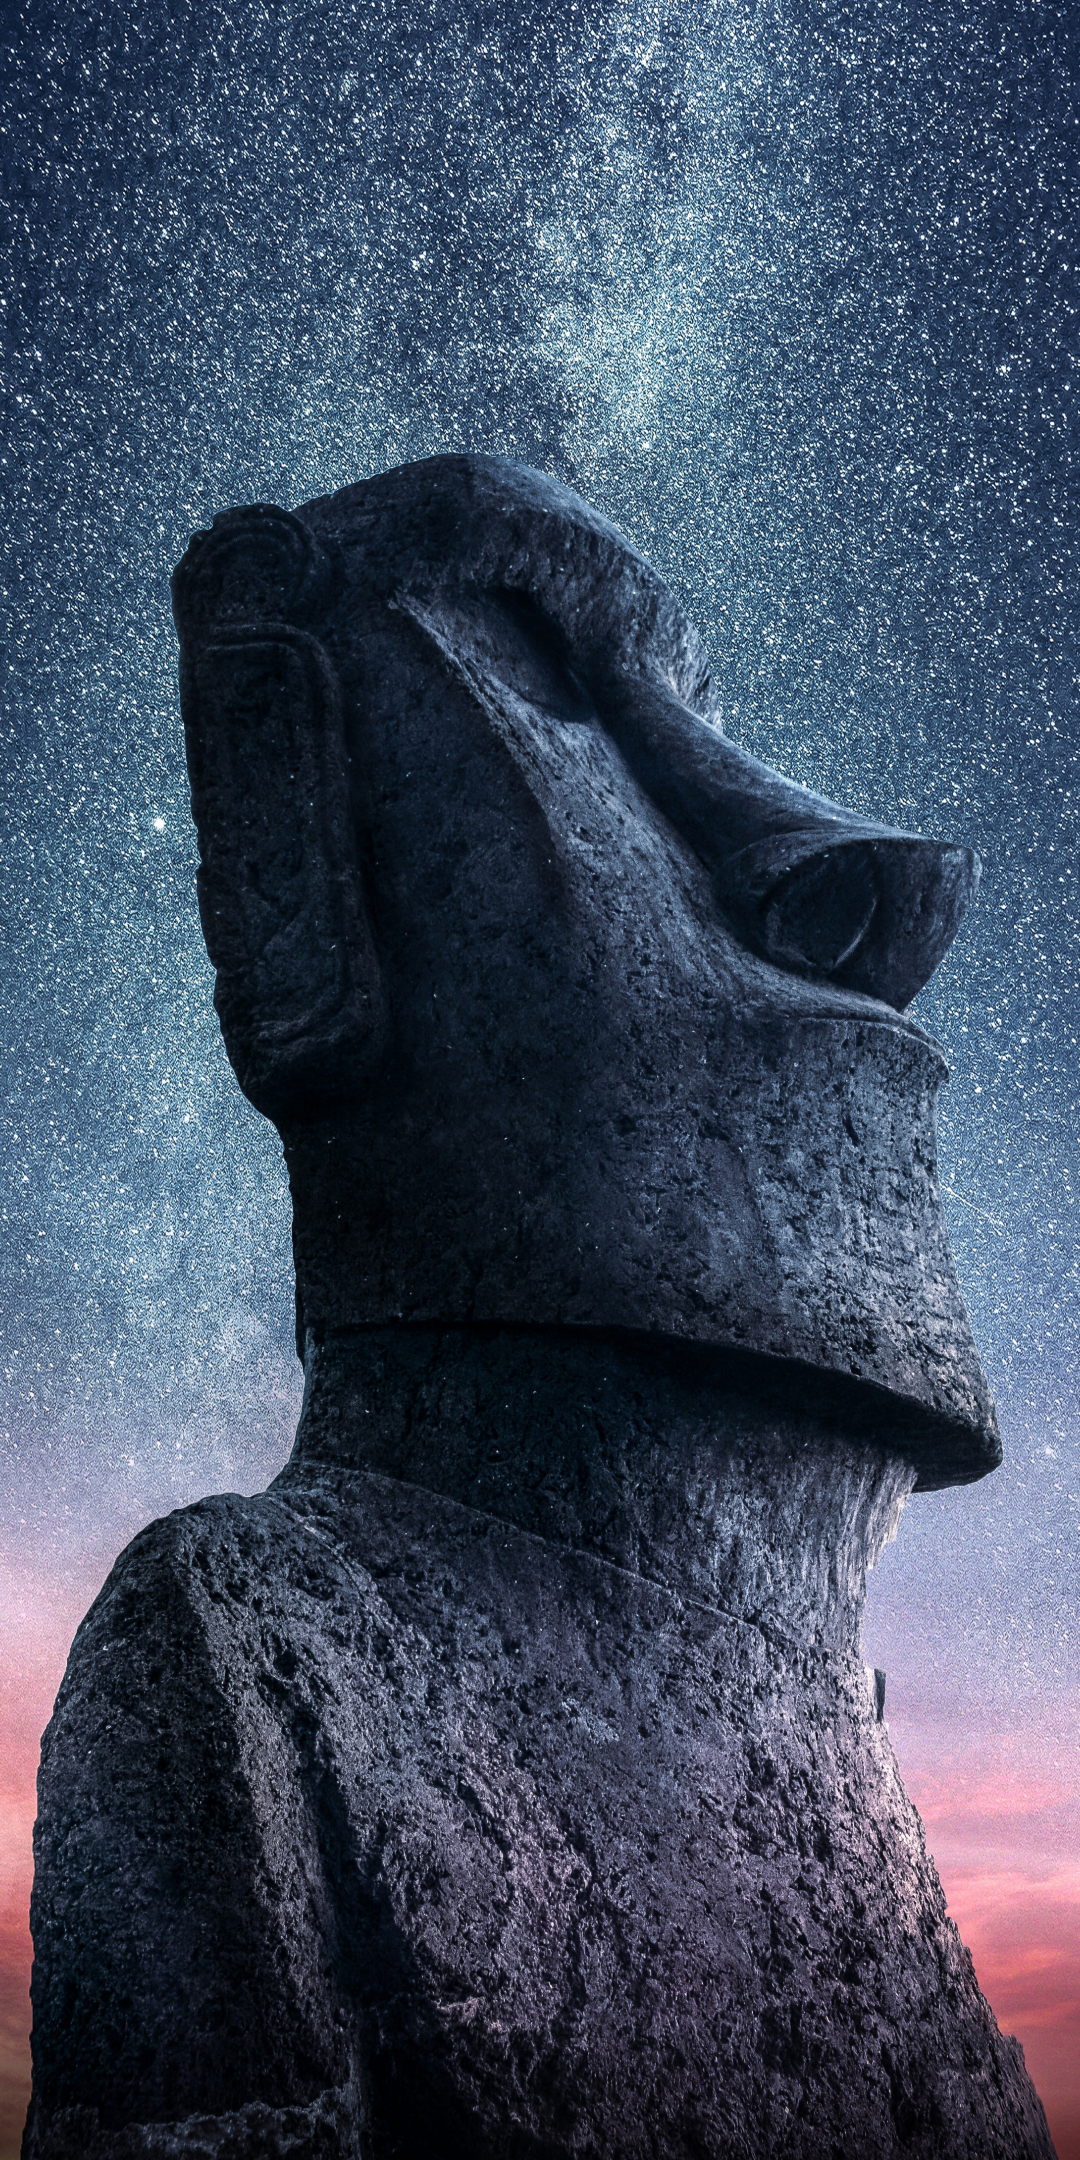 Moai, Statue, Easter Island, sunset, starry sky, 1080x2160 wallpaper